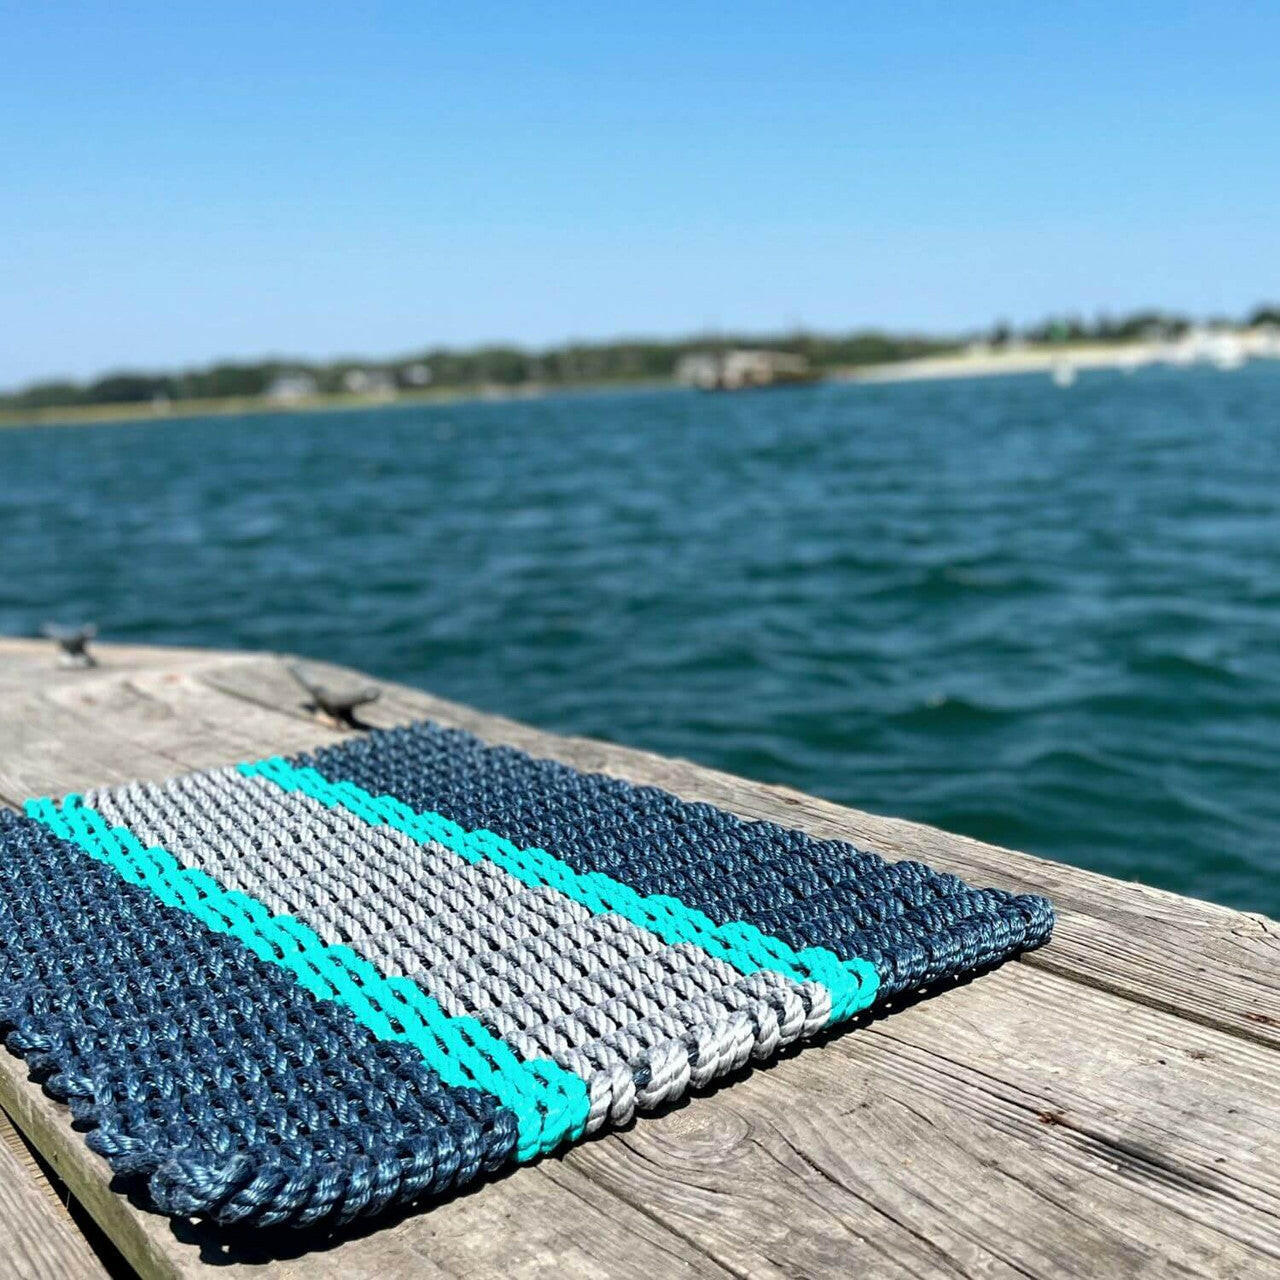 Lobster Rope Doormats, Outdoor Door Mats, Wicked Good Door Mats Made in Maine, Navy Teal and Silver, On Dock Seaside